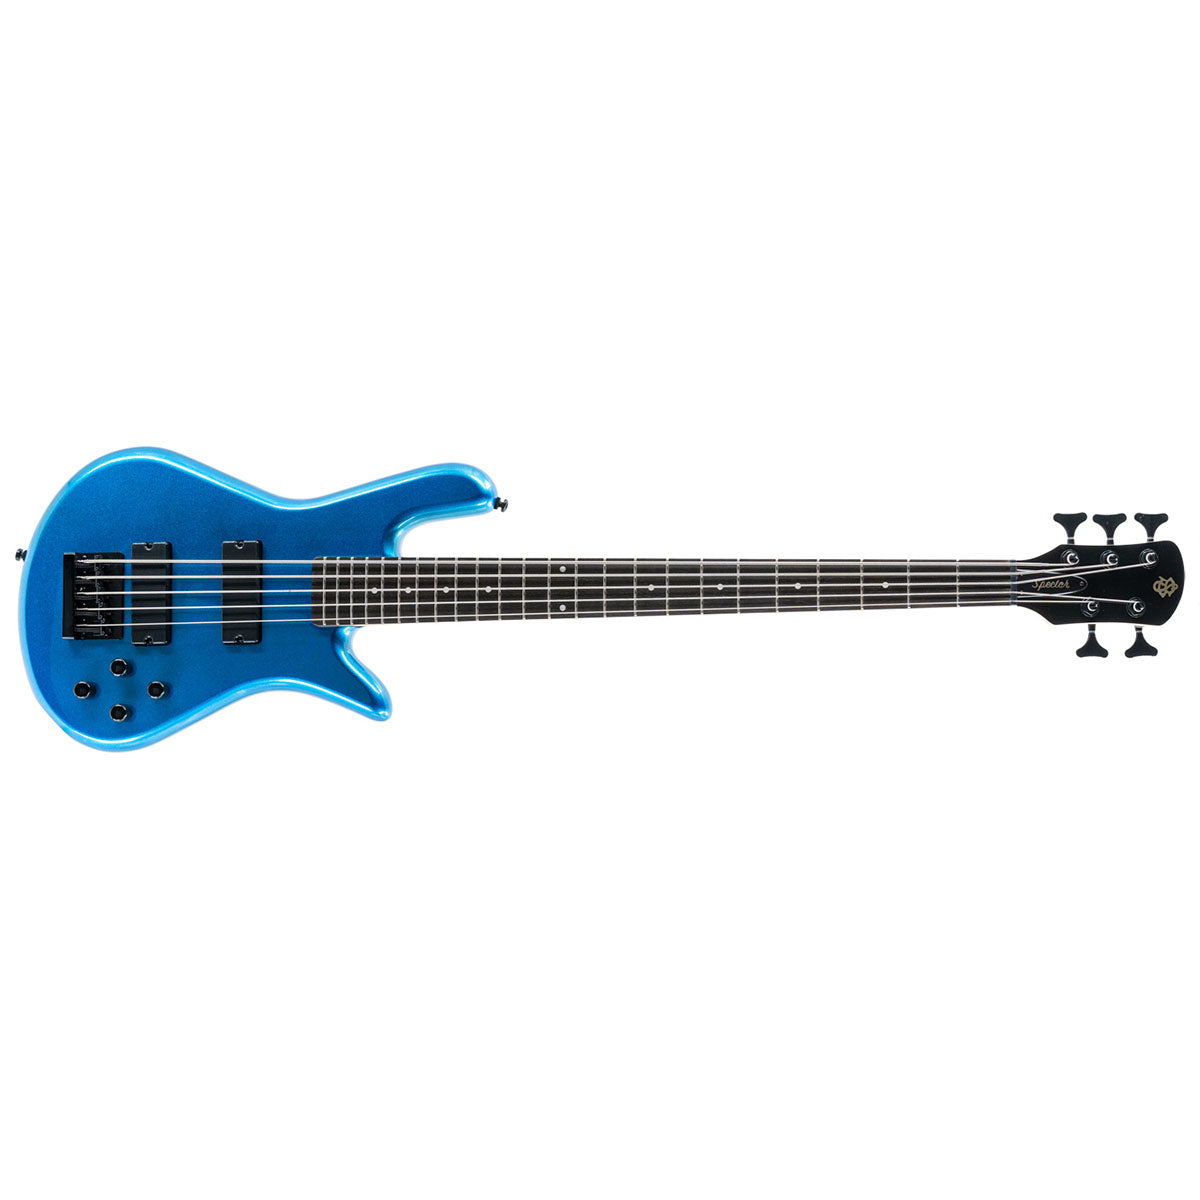 Spector Performer 5 Bass Guitar 5-String Metallic Blue Gloss - PERF5MBL